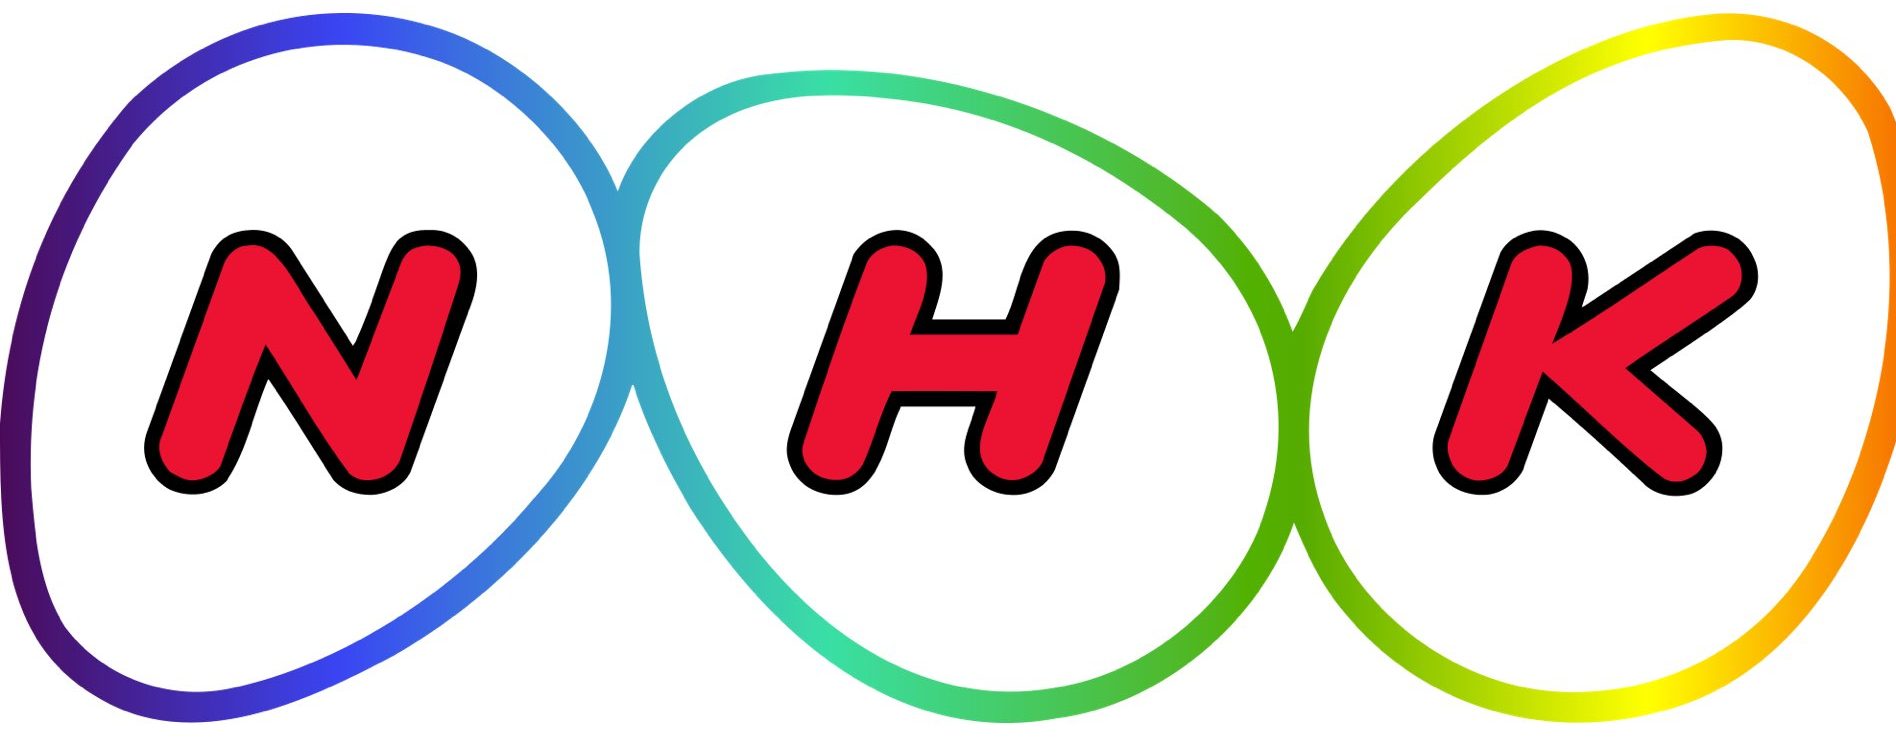 The NHK logo